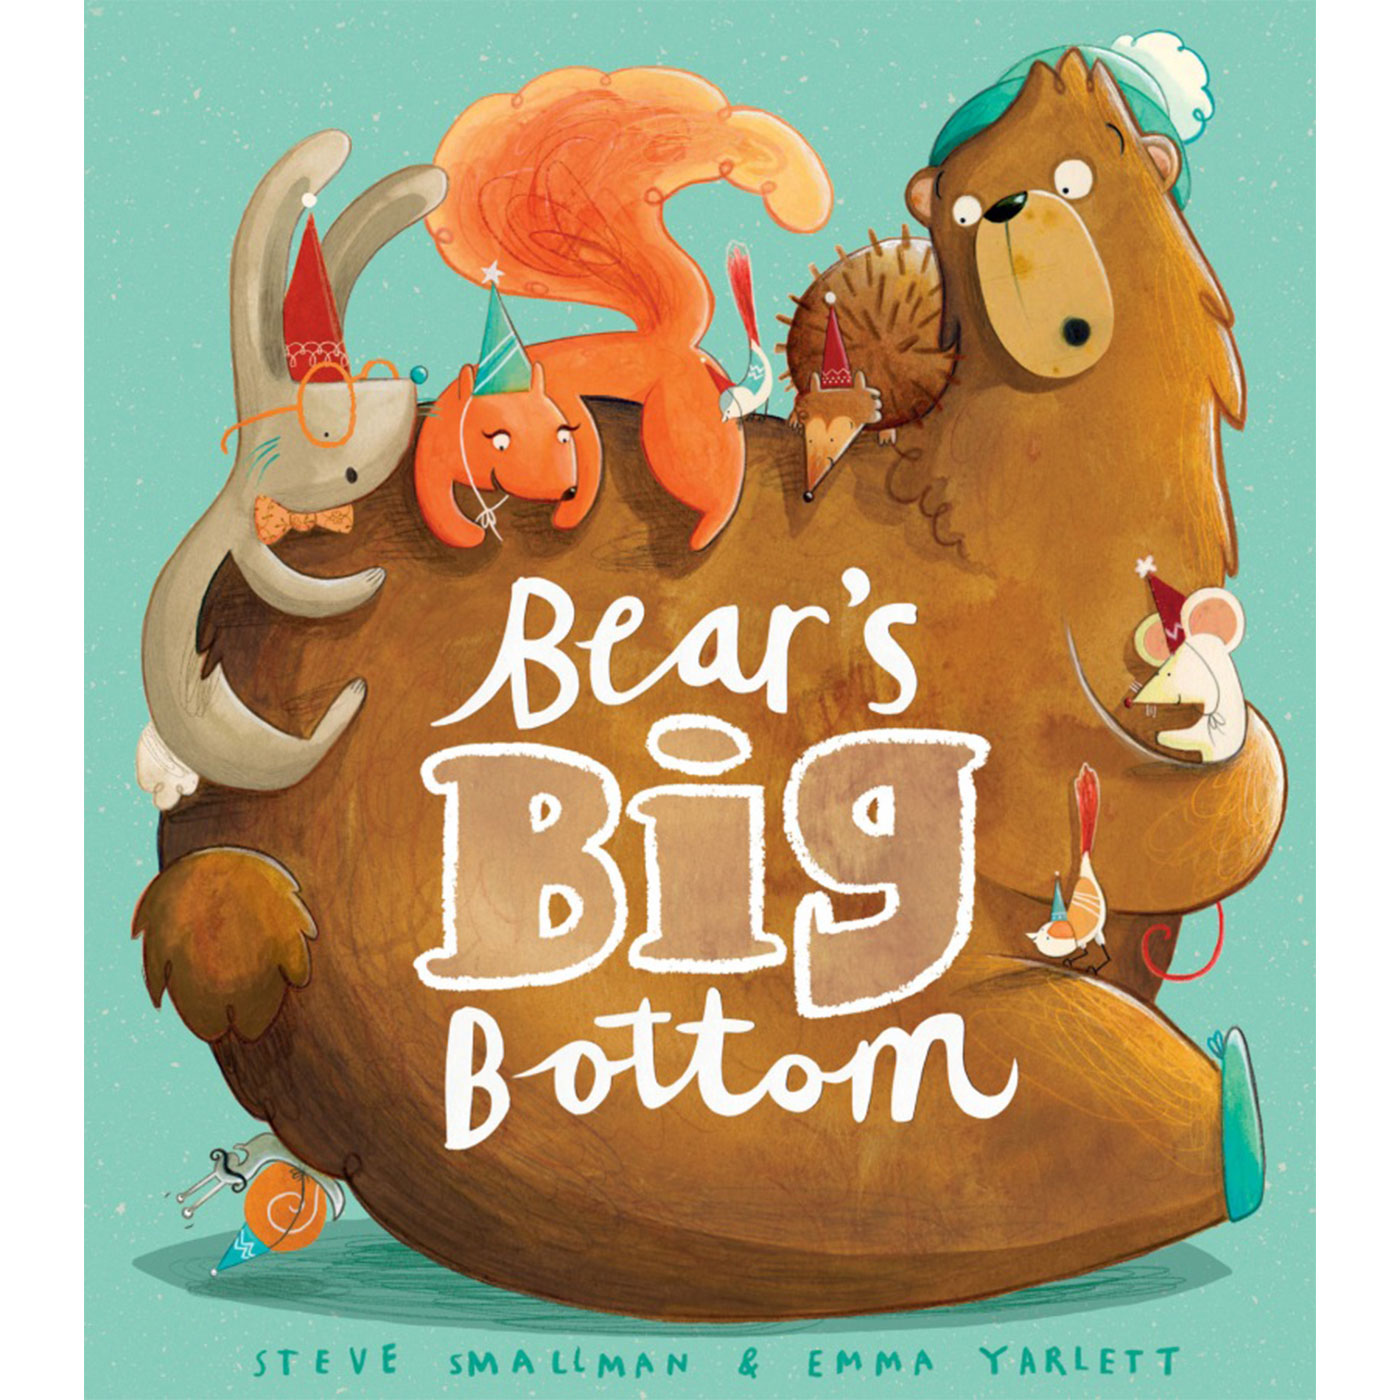  Bears Big Bottom